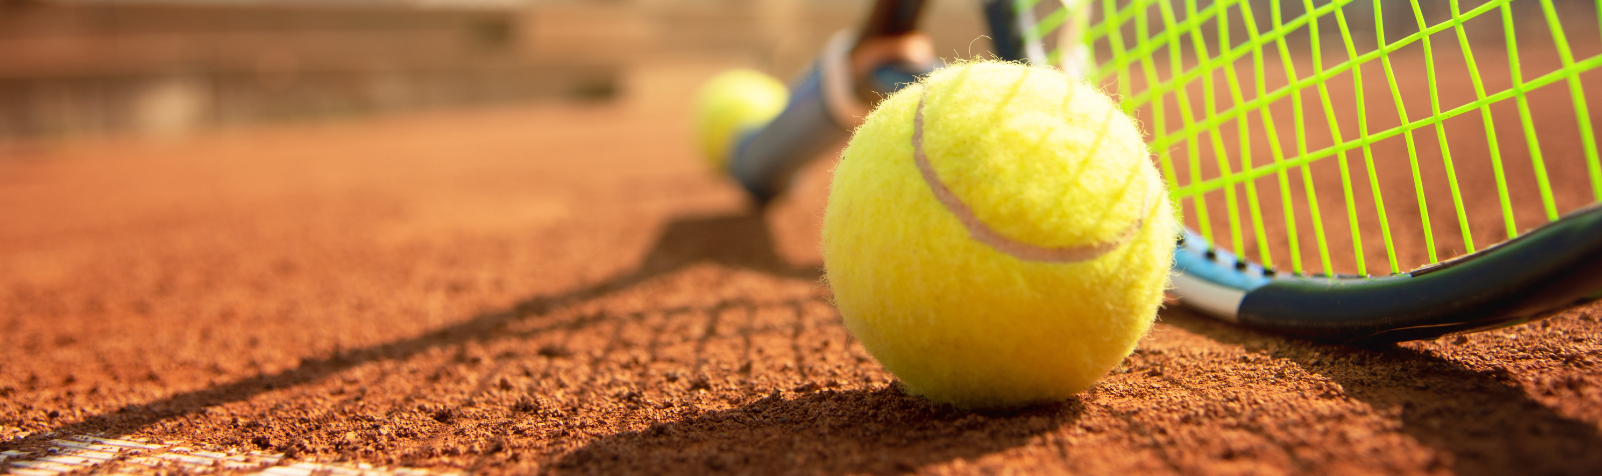 Photo balle de tennis et raquette